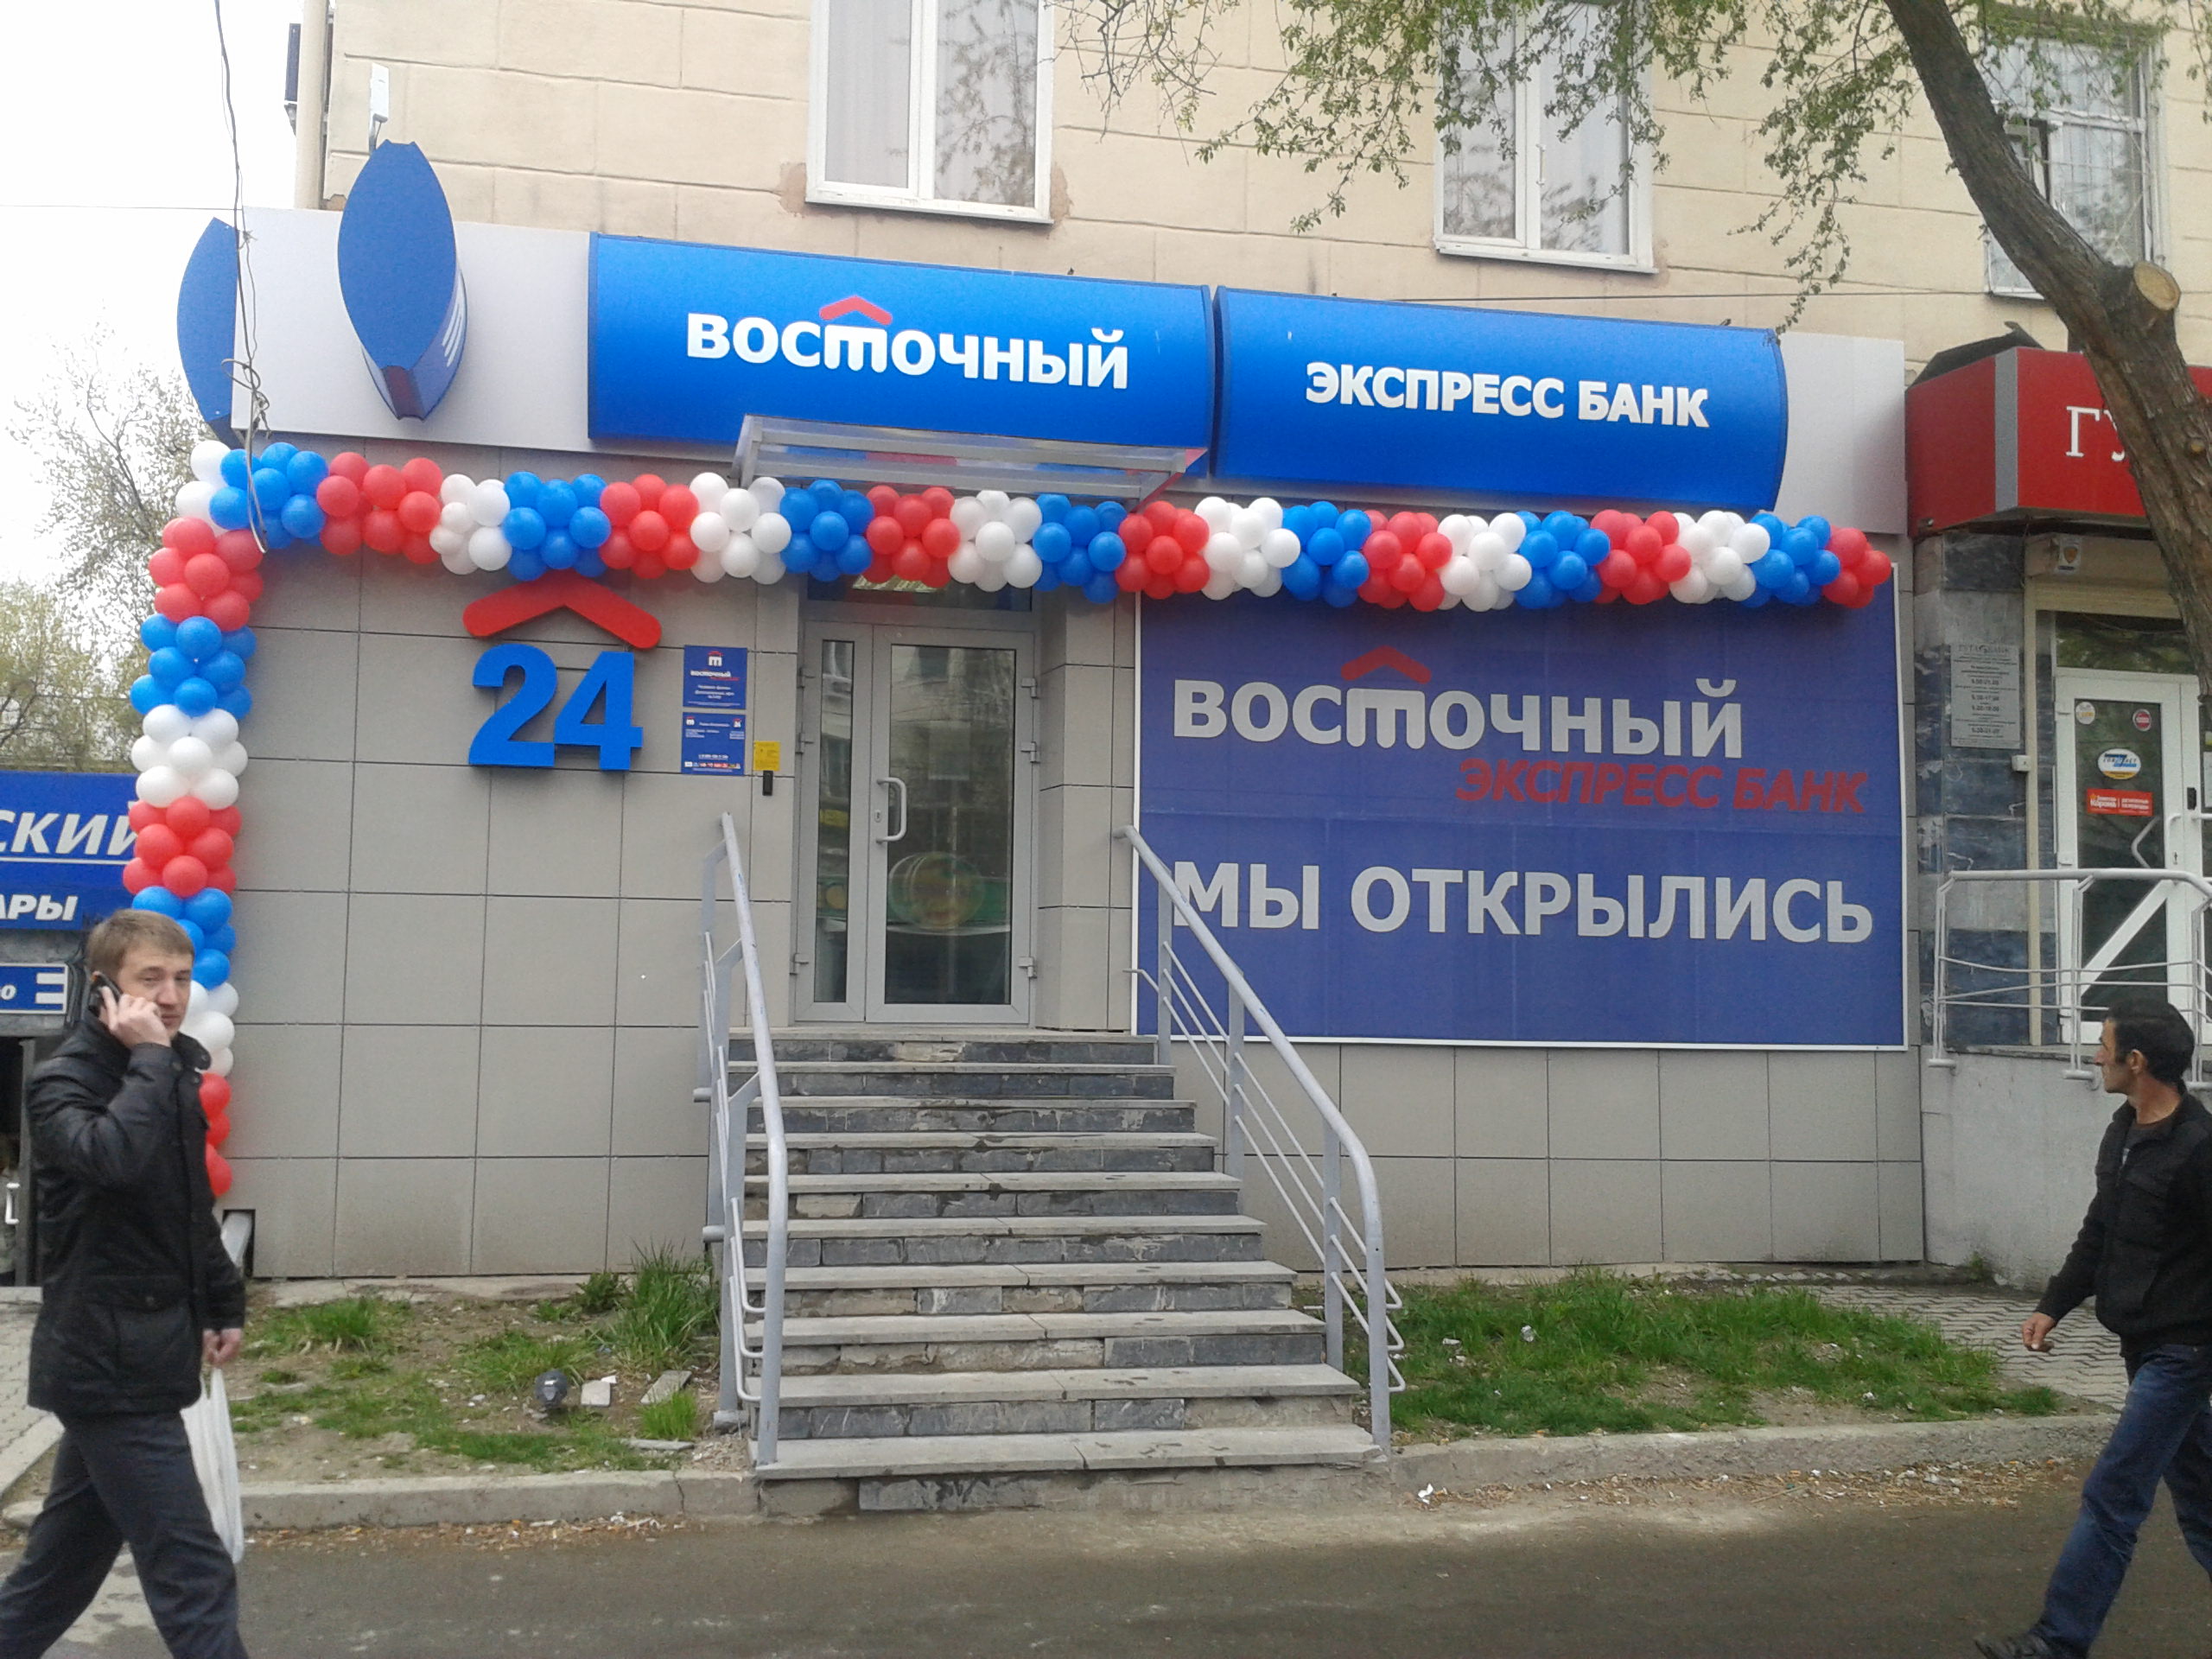 Адреса банков бузулука. Восточный банк. Экспресс банк. Банк Восточный Екатеринбург. Ближайший офис восточного банка.